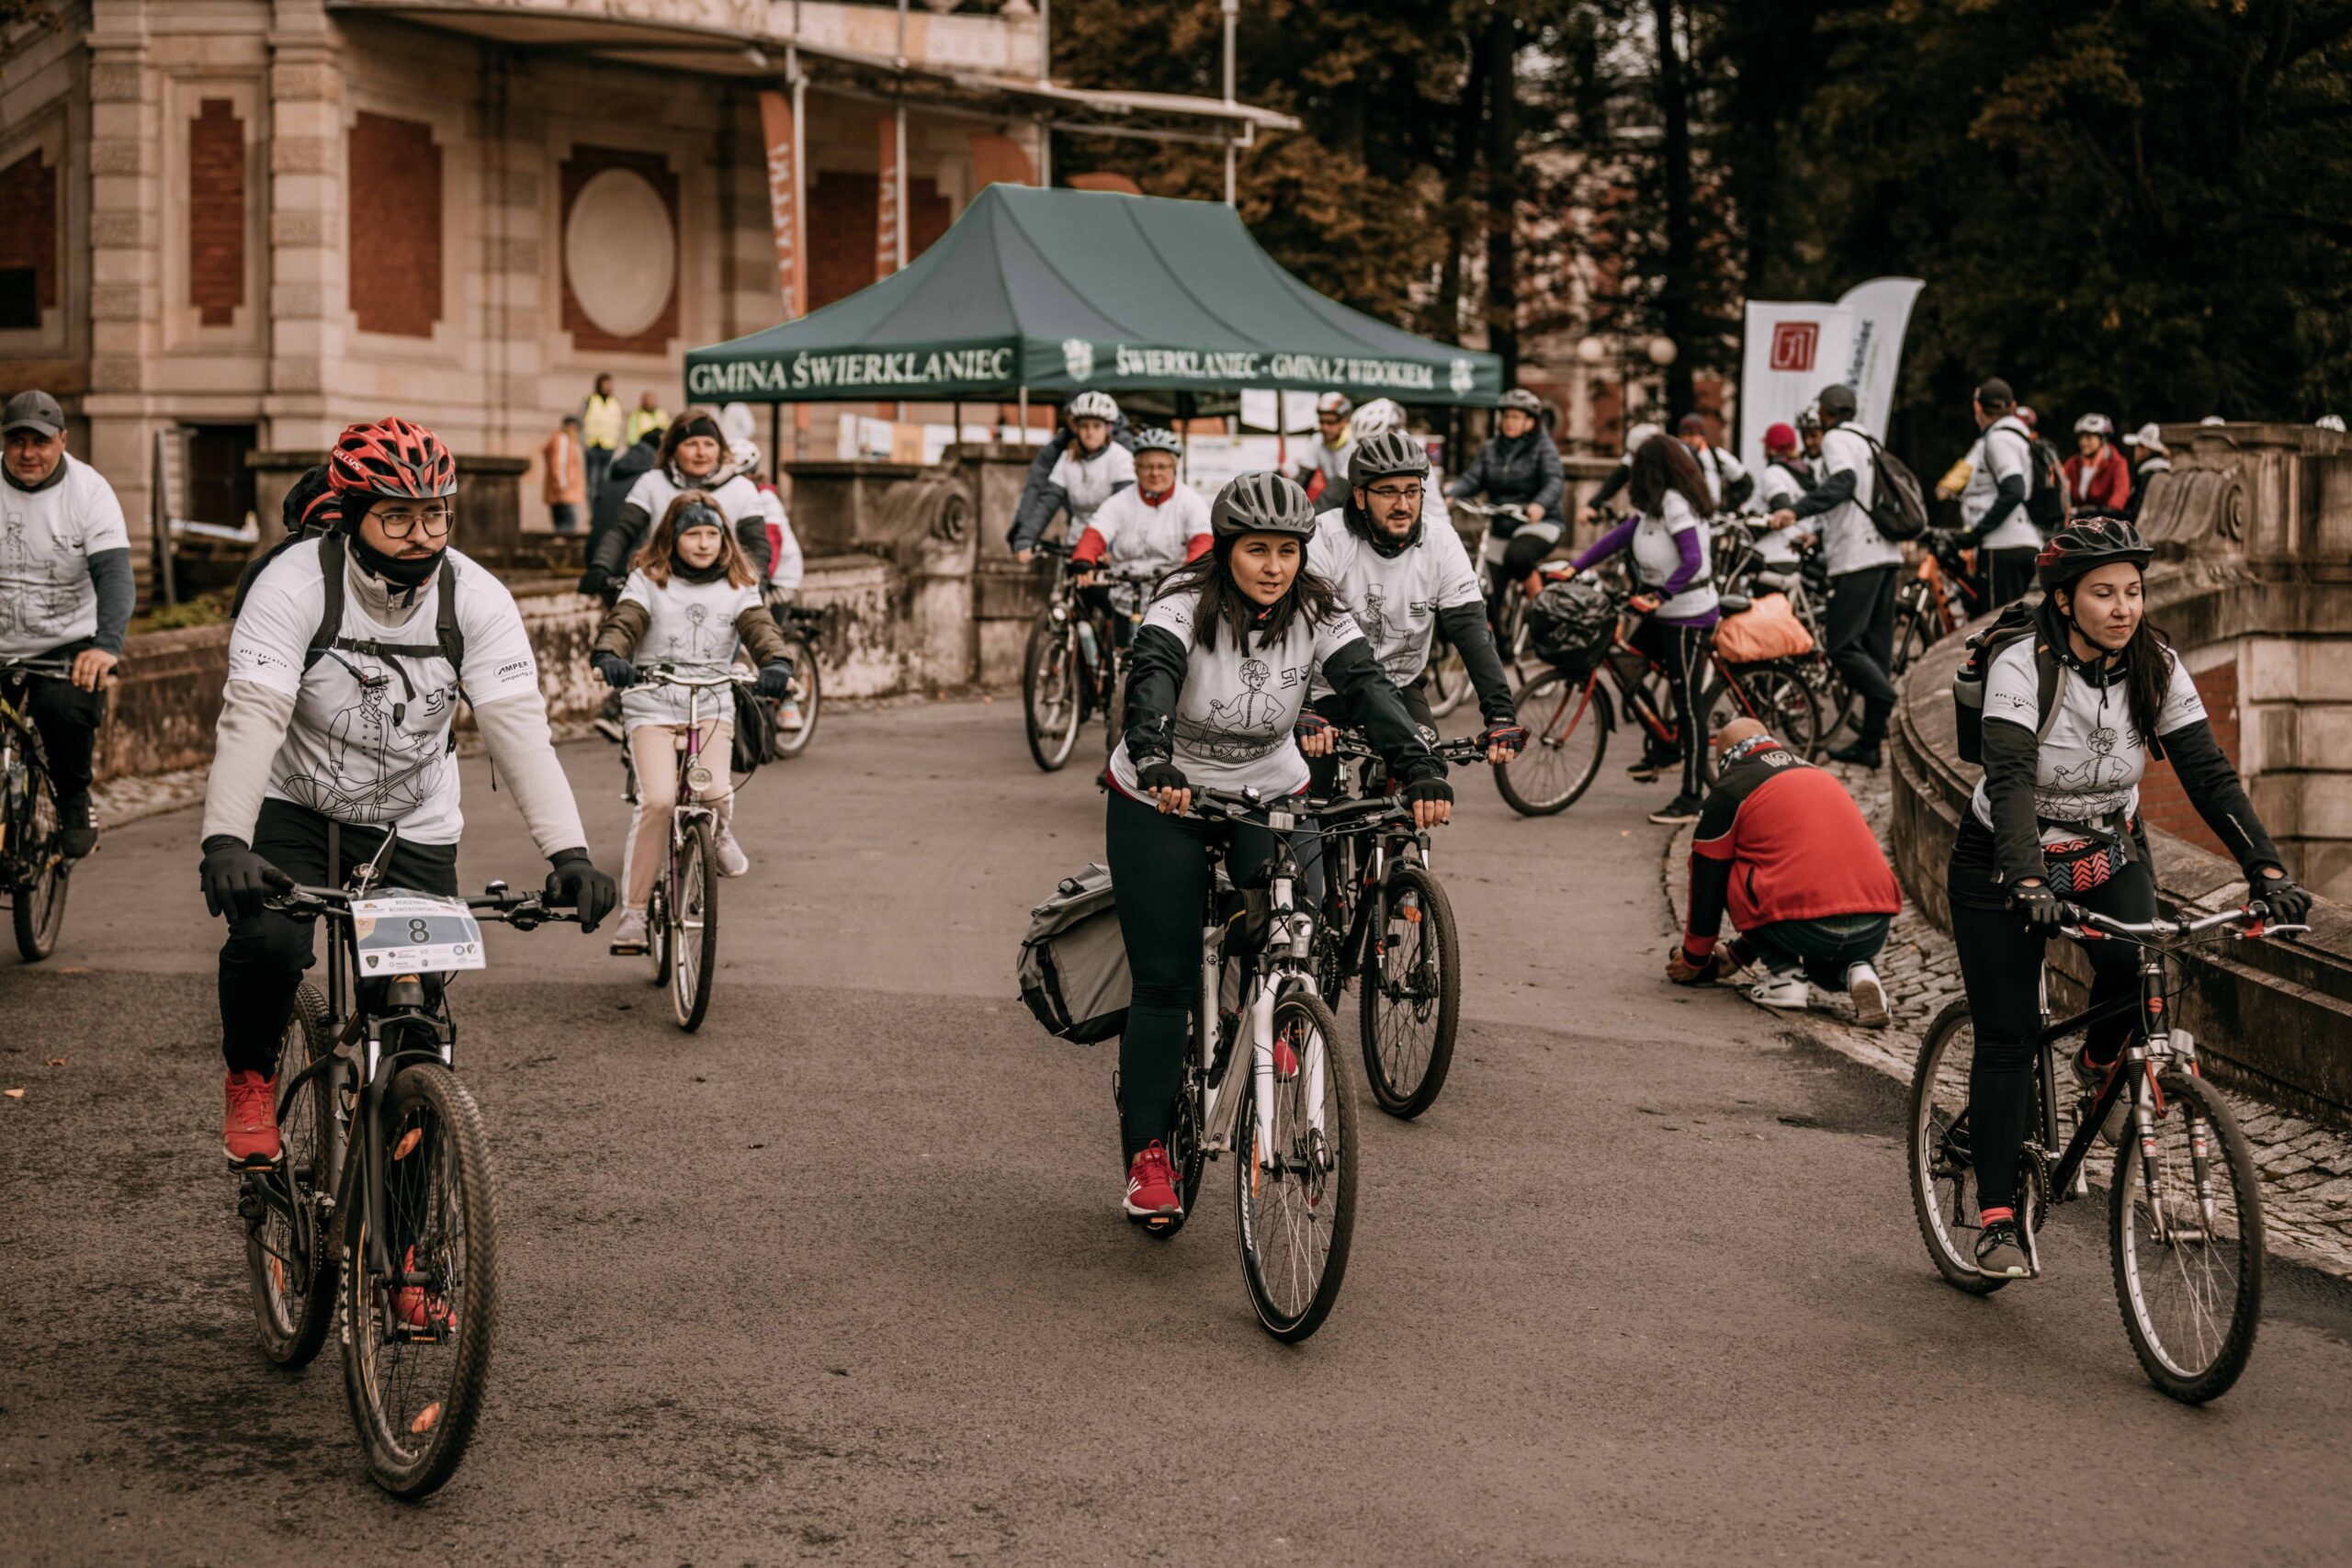 Grupa osób w koszulkach IX Rajdu rowerowego wyrusza na swoich rowerach spod Pałacu Kawalera w Świerklańcu na IX Rajd Rowerowy podczas szlacheckiego weekendu.